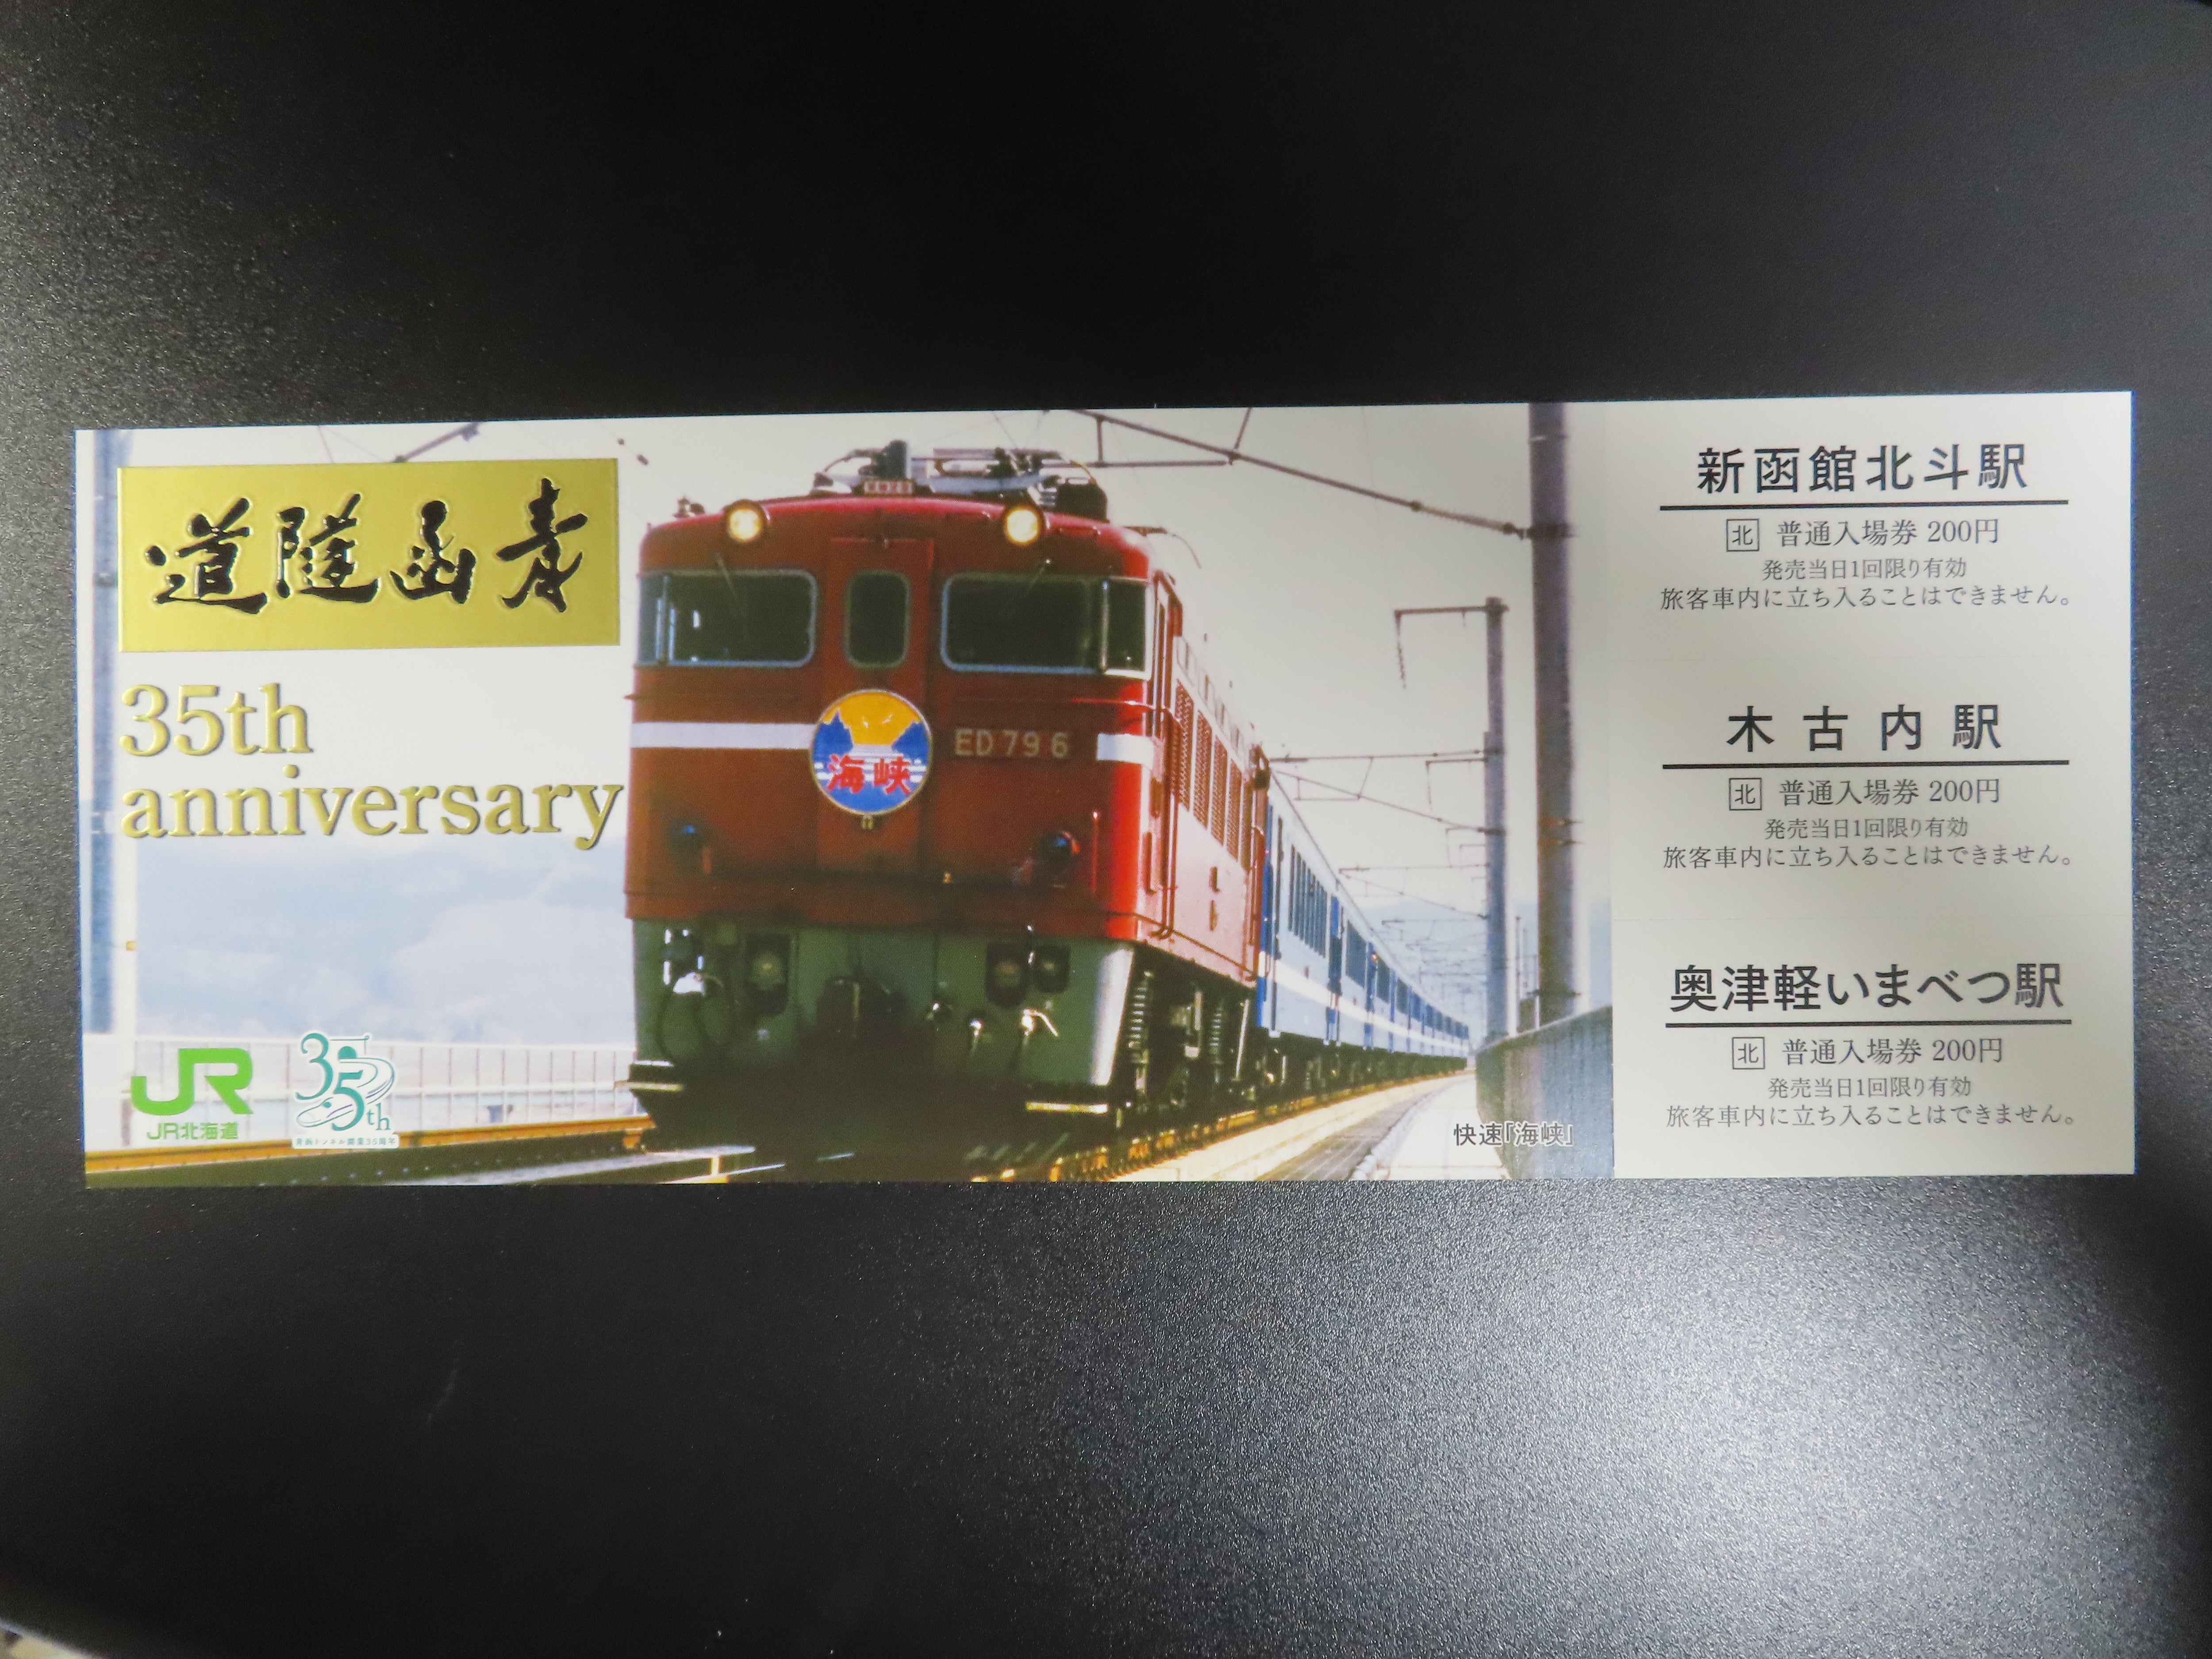 奥津軽いまべつ駅 駅カード 青函トンネル開業35 周年記念入場券セット